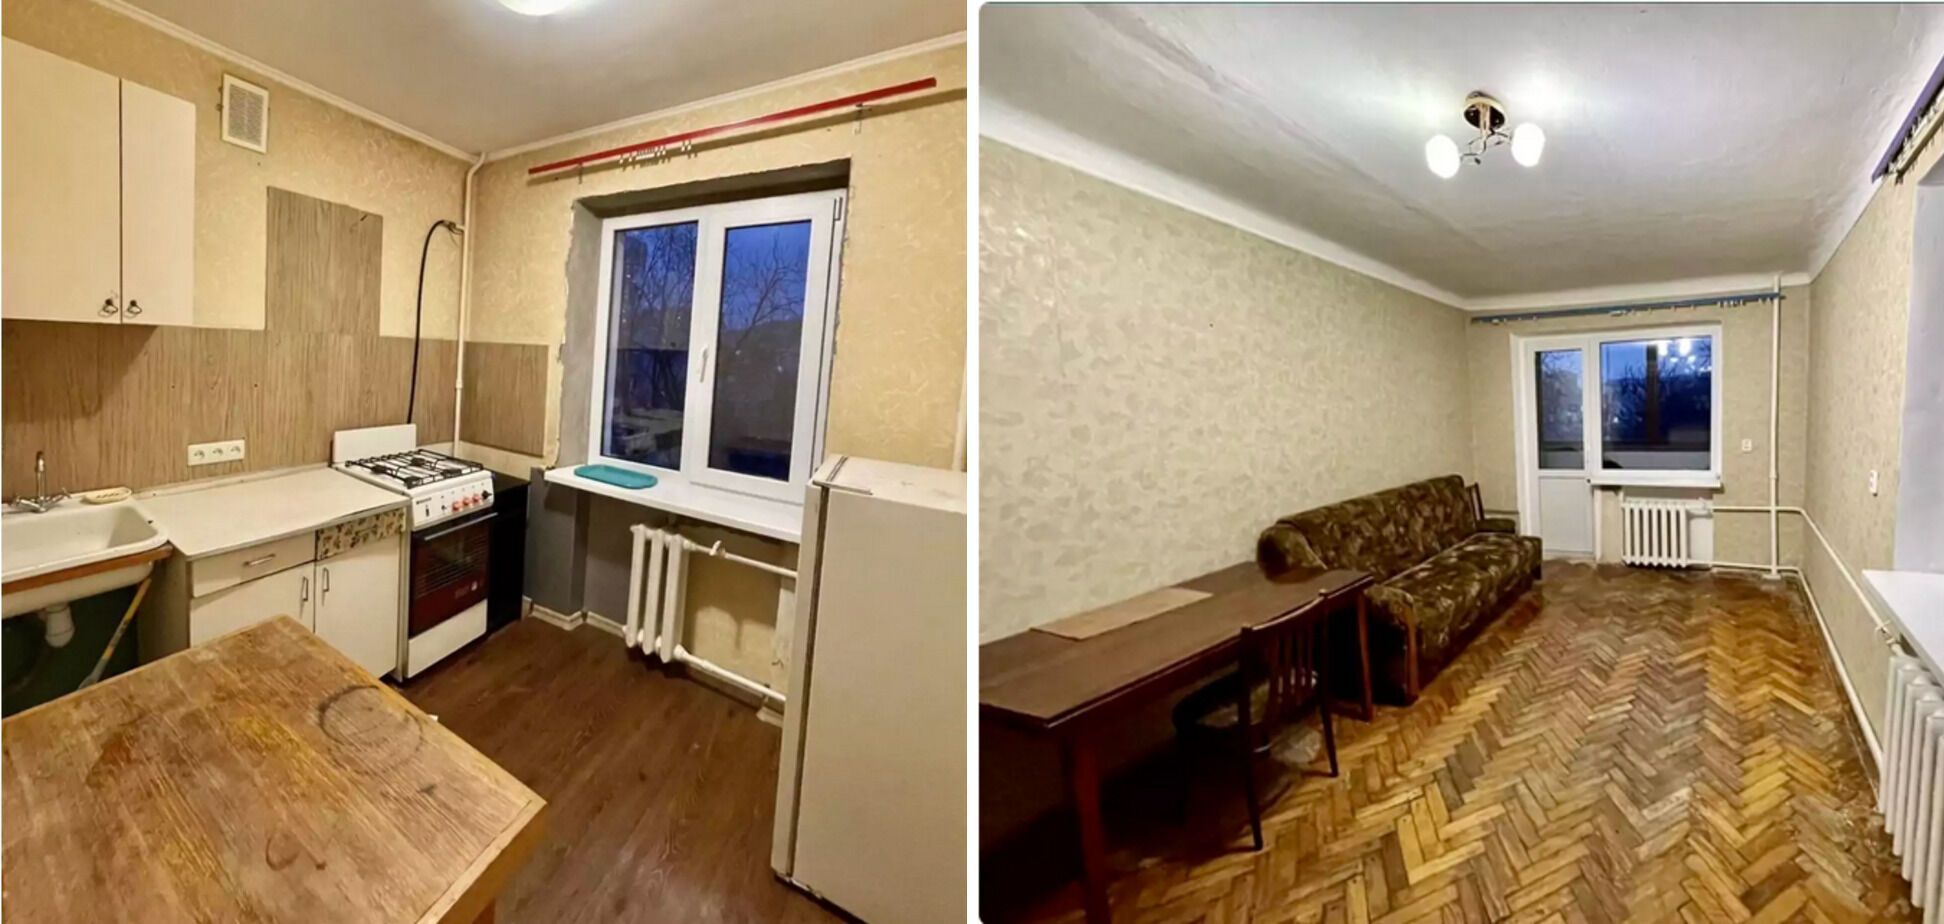 На Дорогожичах можно снять квартиру за 4 000 грн